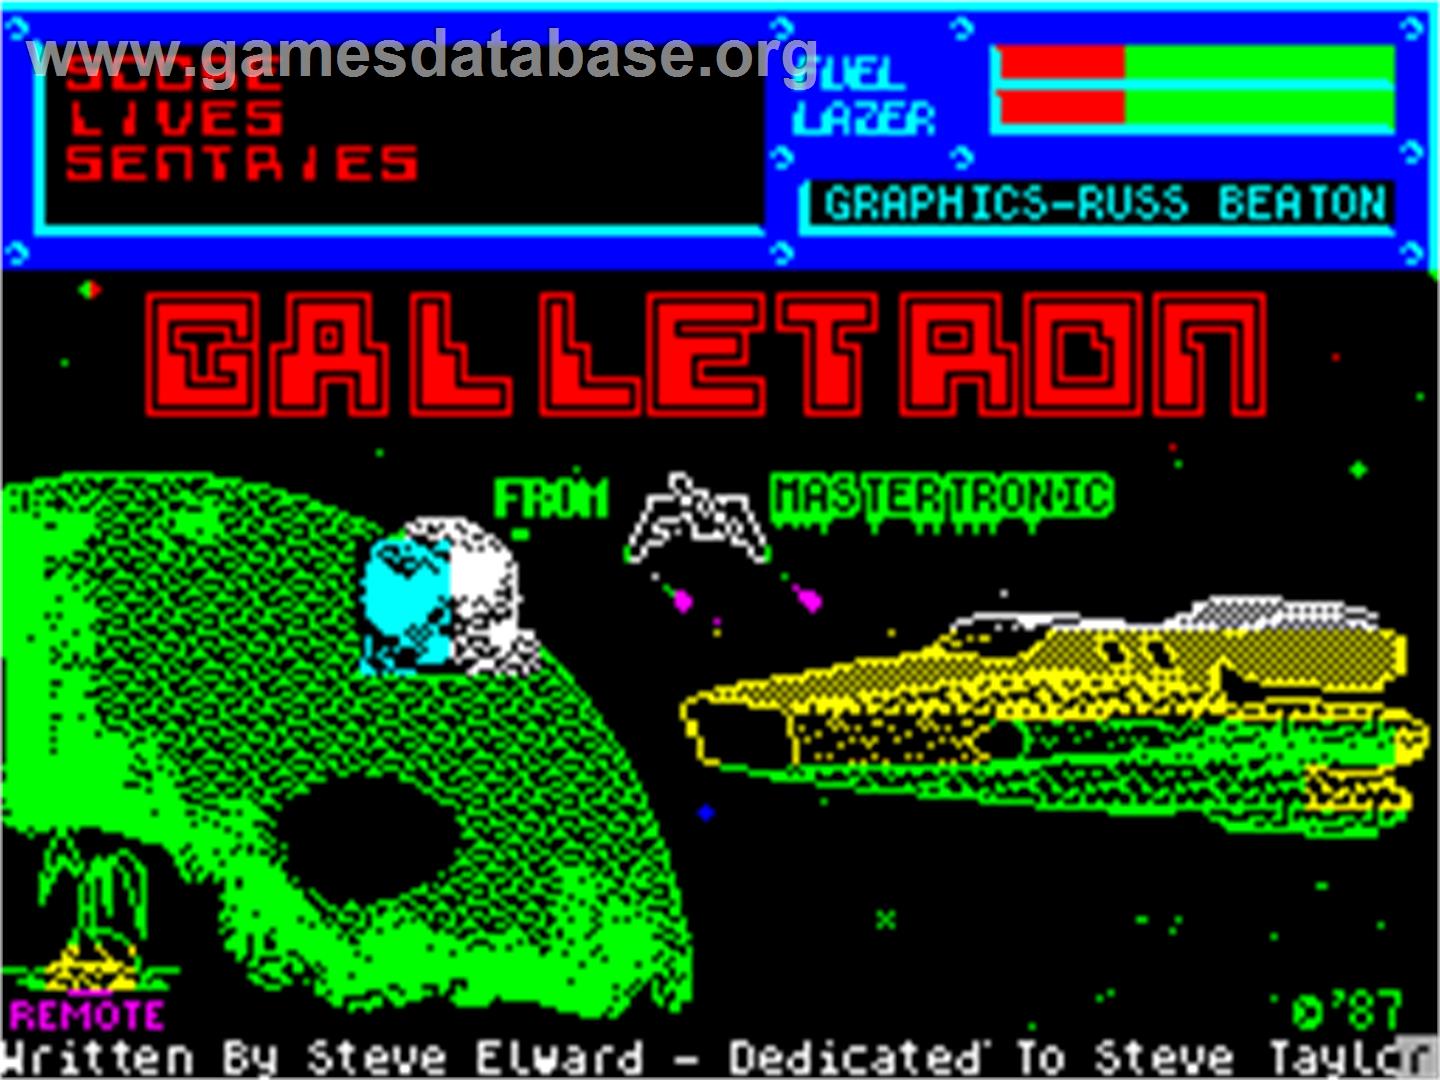 Galletron - Sinclair ZX Spectrum - Artwork - Title Screen